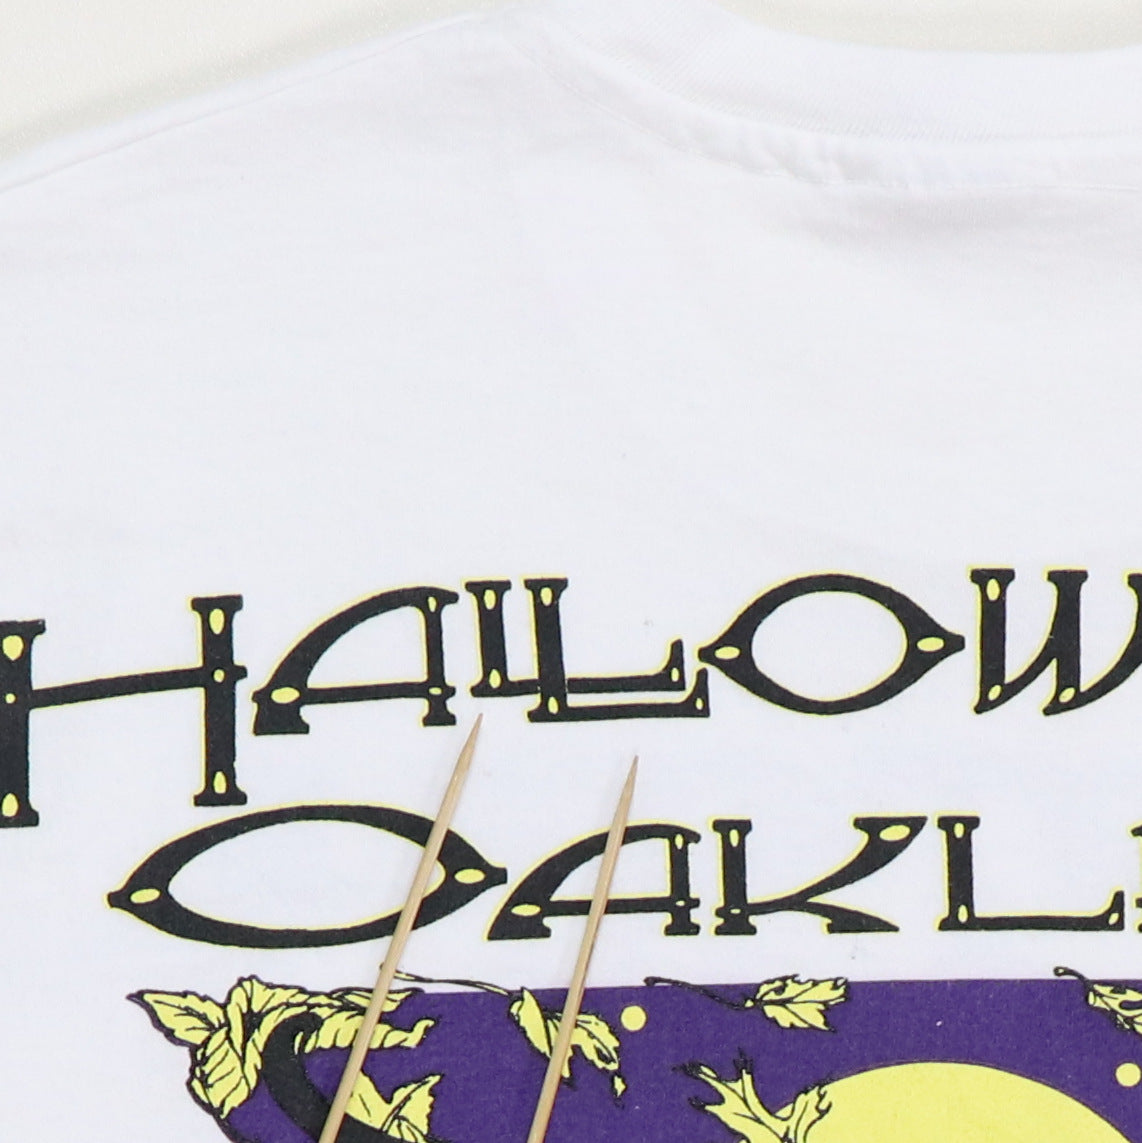 1991 Grateful Dead Halloween Oakland Concert Shirt